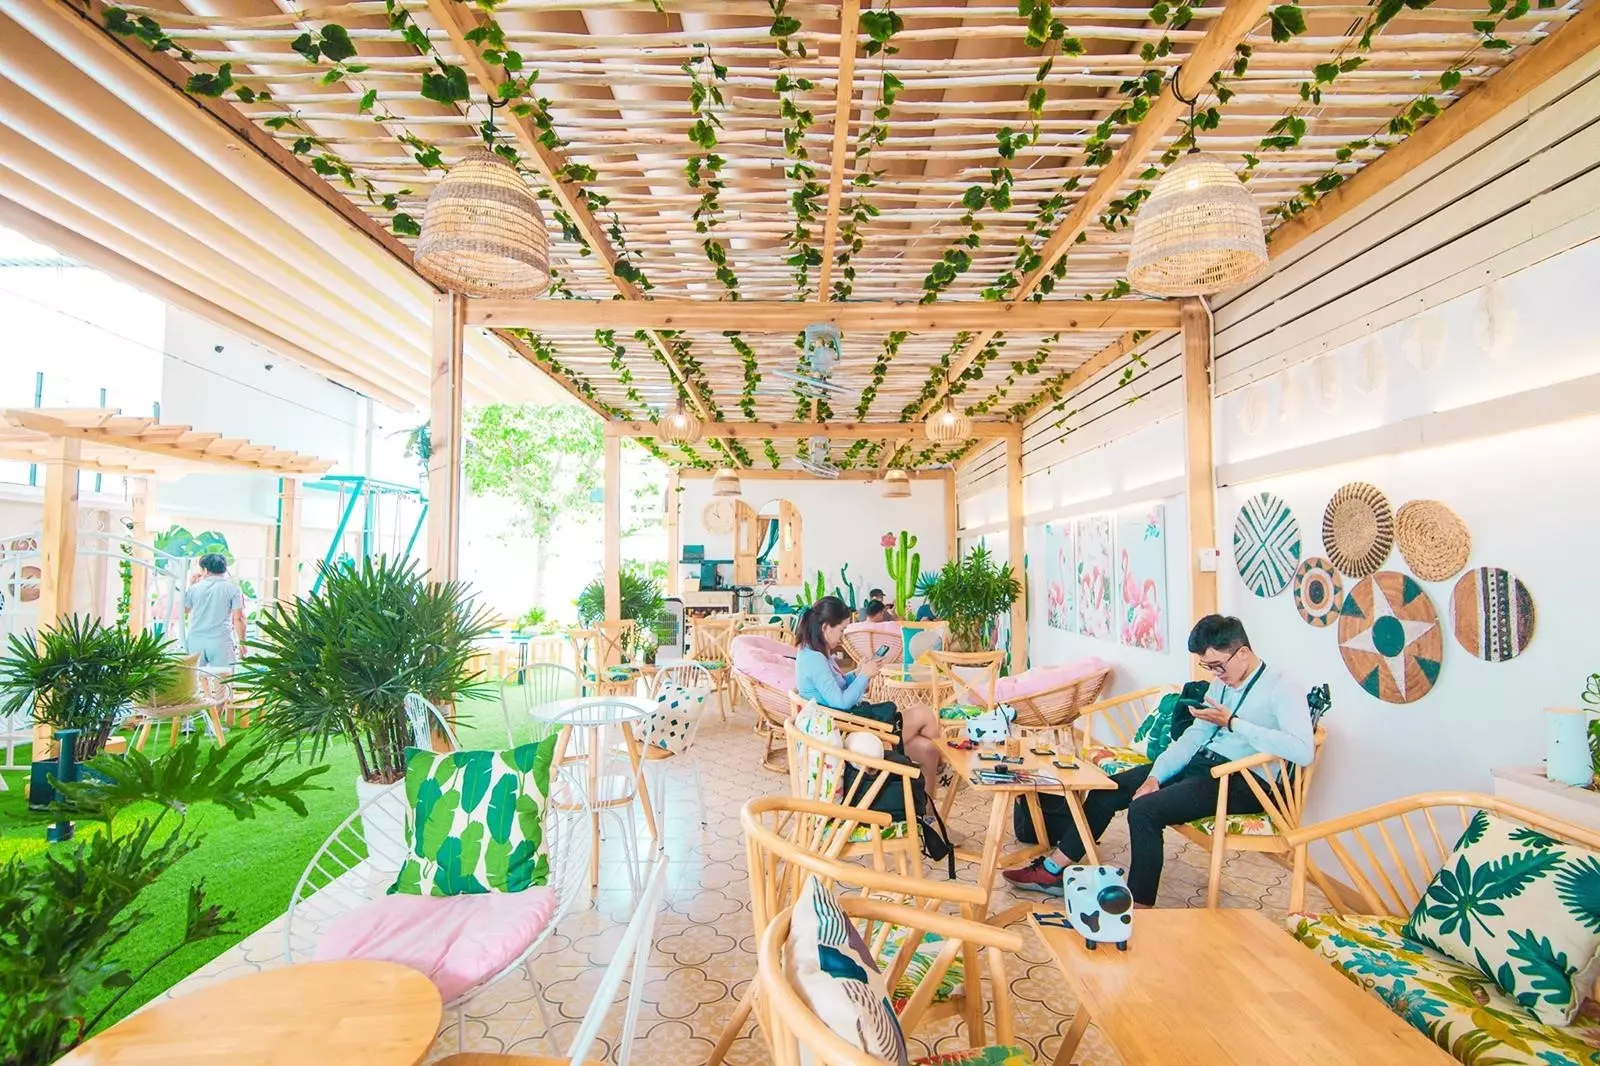 Garden House Coffee là một quán cà phê mang phong cách vườn nhỏ, với không gian xanh mát và thoáng đãng. Quán nằm trong một ngôi nhà cổ điển, được trang trí tinh tế và sáng tạo, mang đến cho khách hàng một trải nghiệm thú vị và độc đáo khi thưởng thức cà phê.